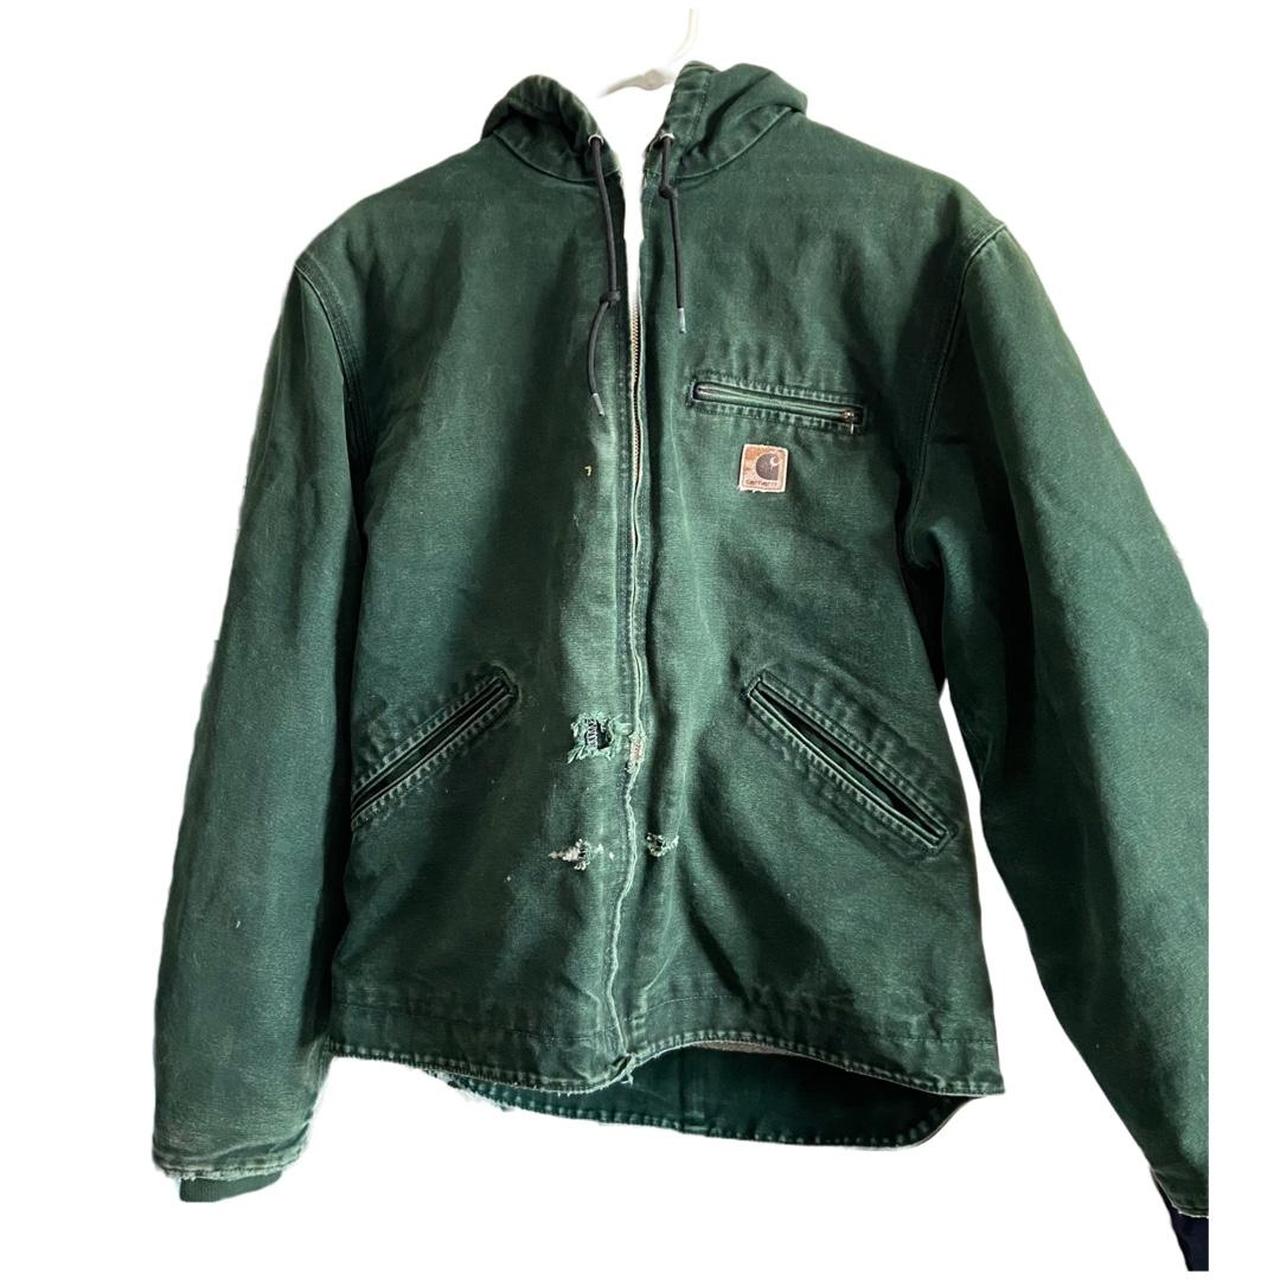 Vintage rare Green Carhartt fleece insulated hooded... - Depop